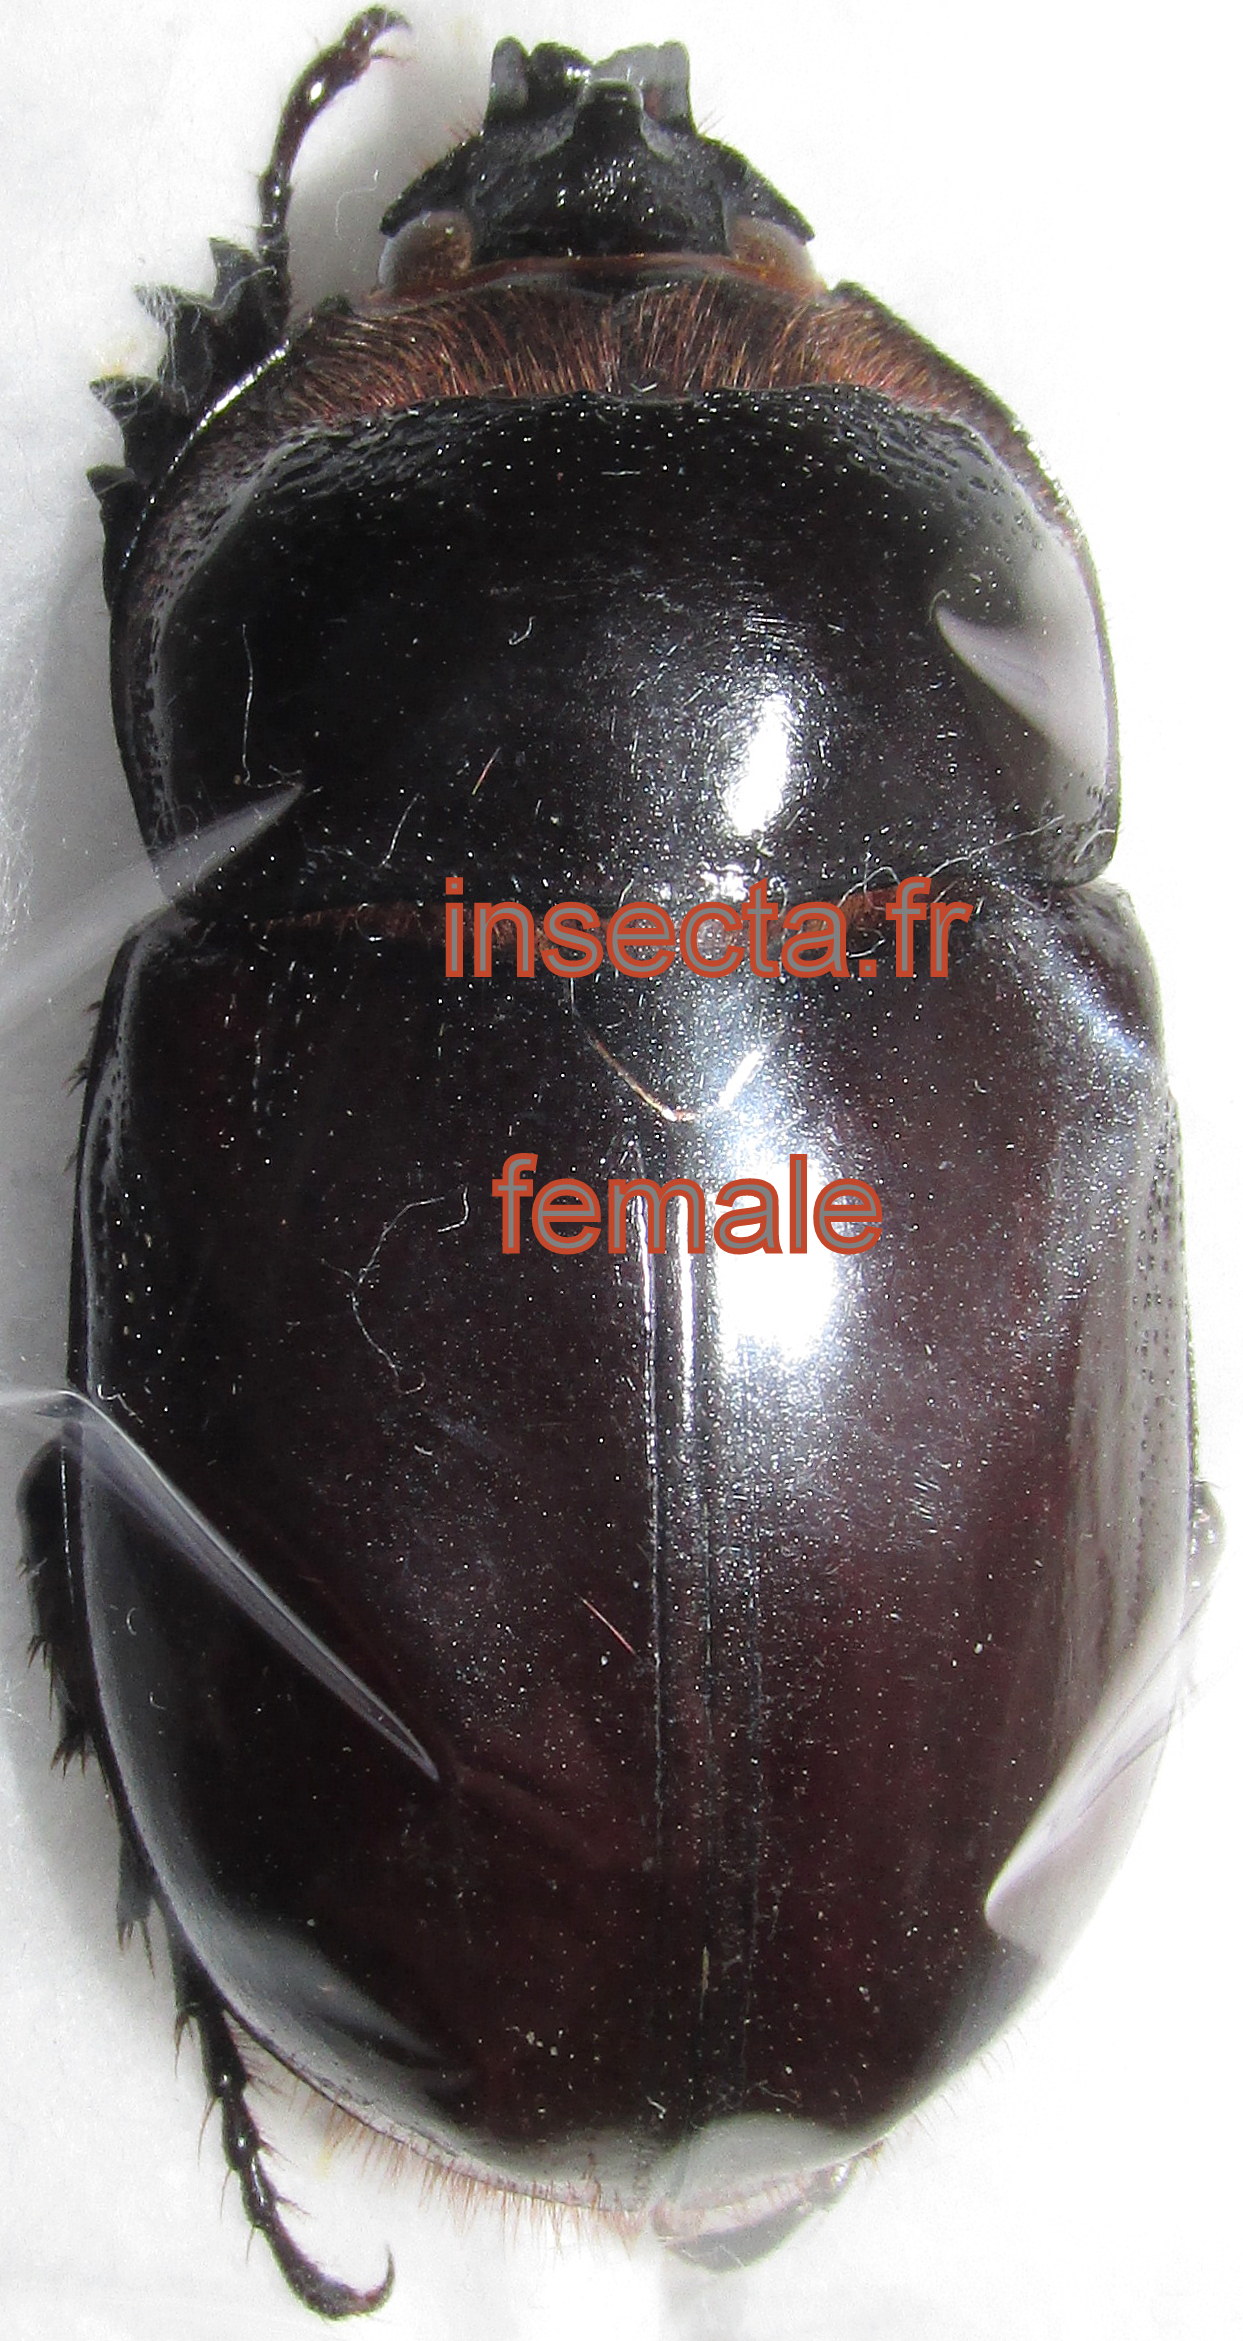 Heterogomphus ulysses male 42-43mm